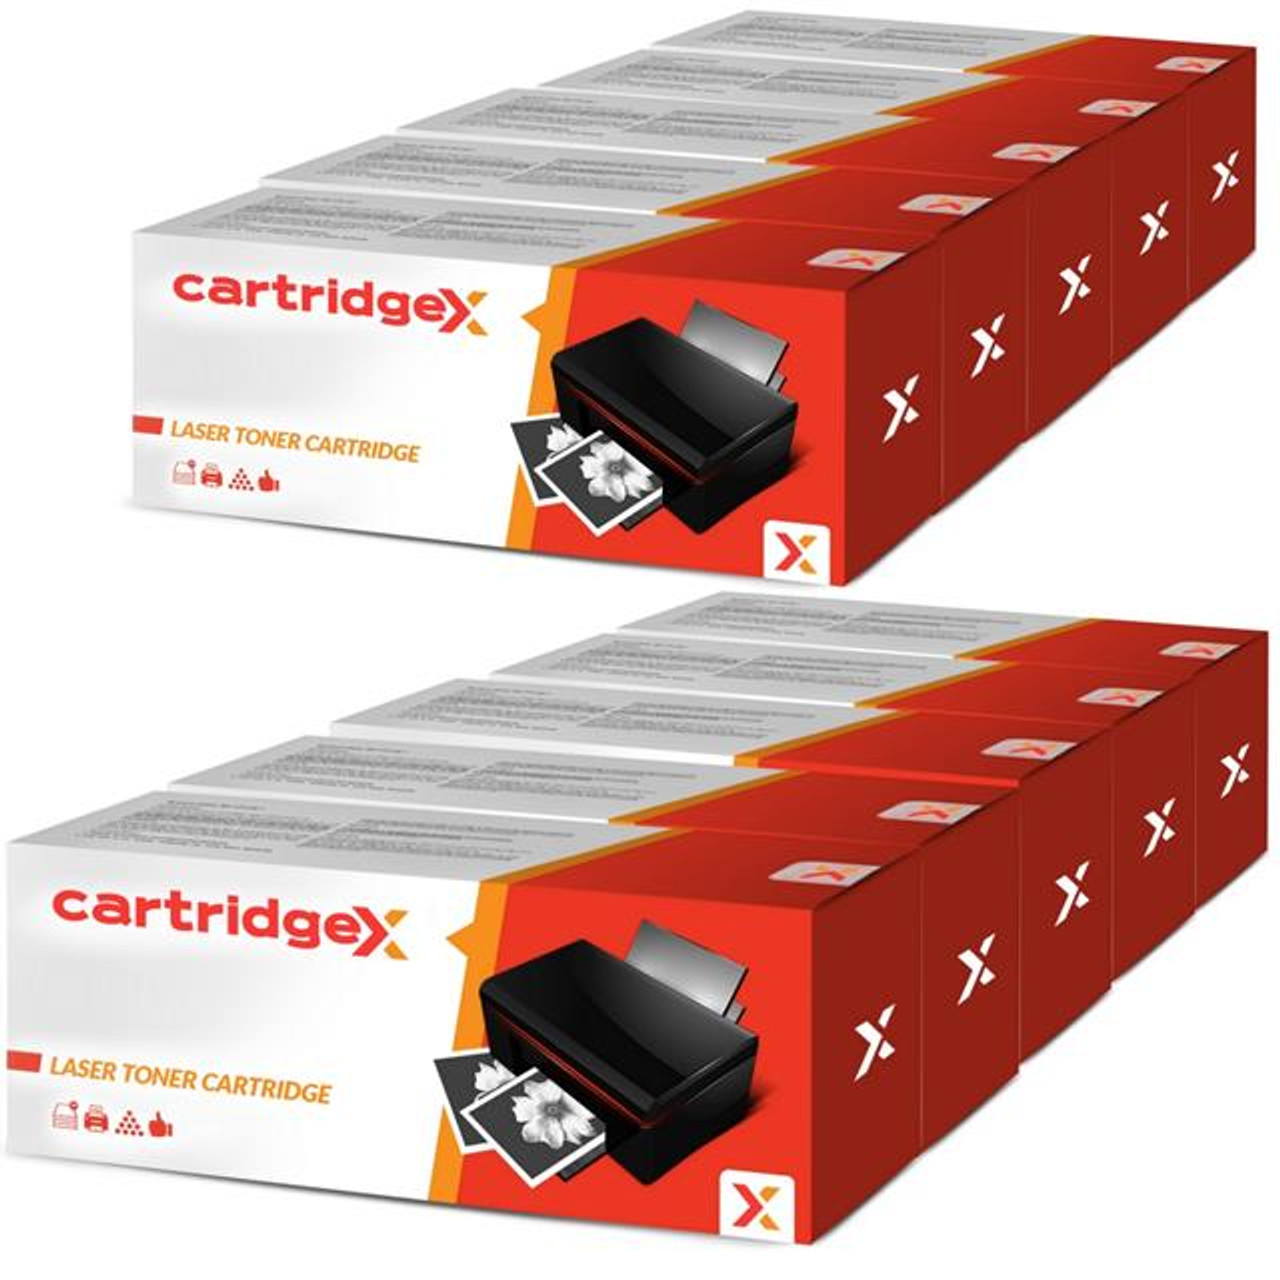 Compatible 10 High Cap Toner Cartridges For Cf280x 80x Hp Laserjet Pro 400 Mfp M425dw